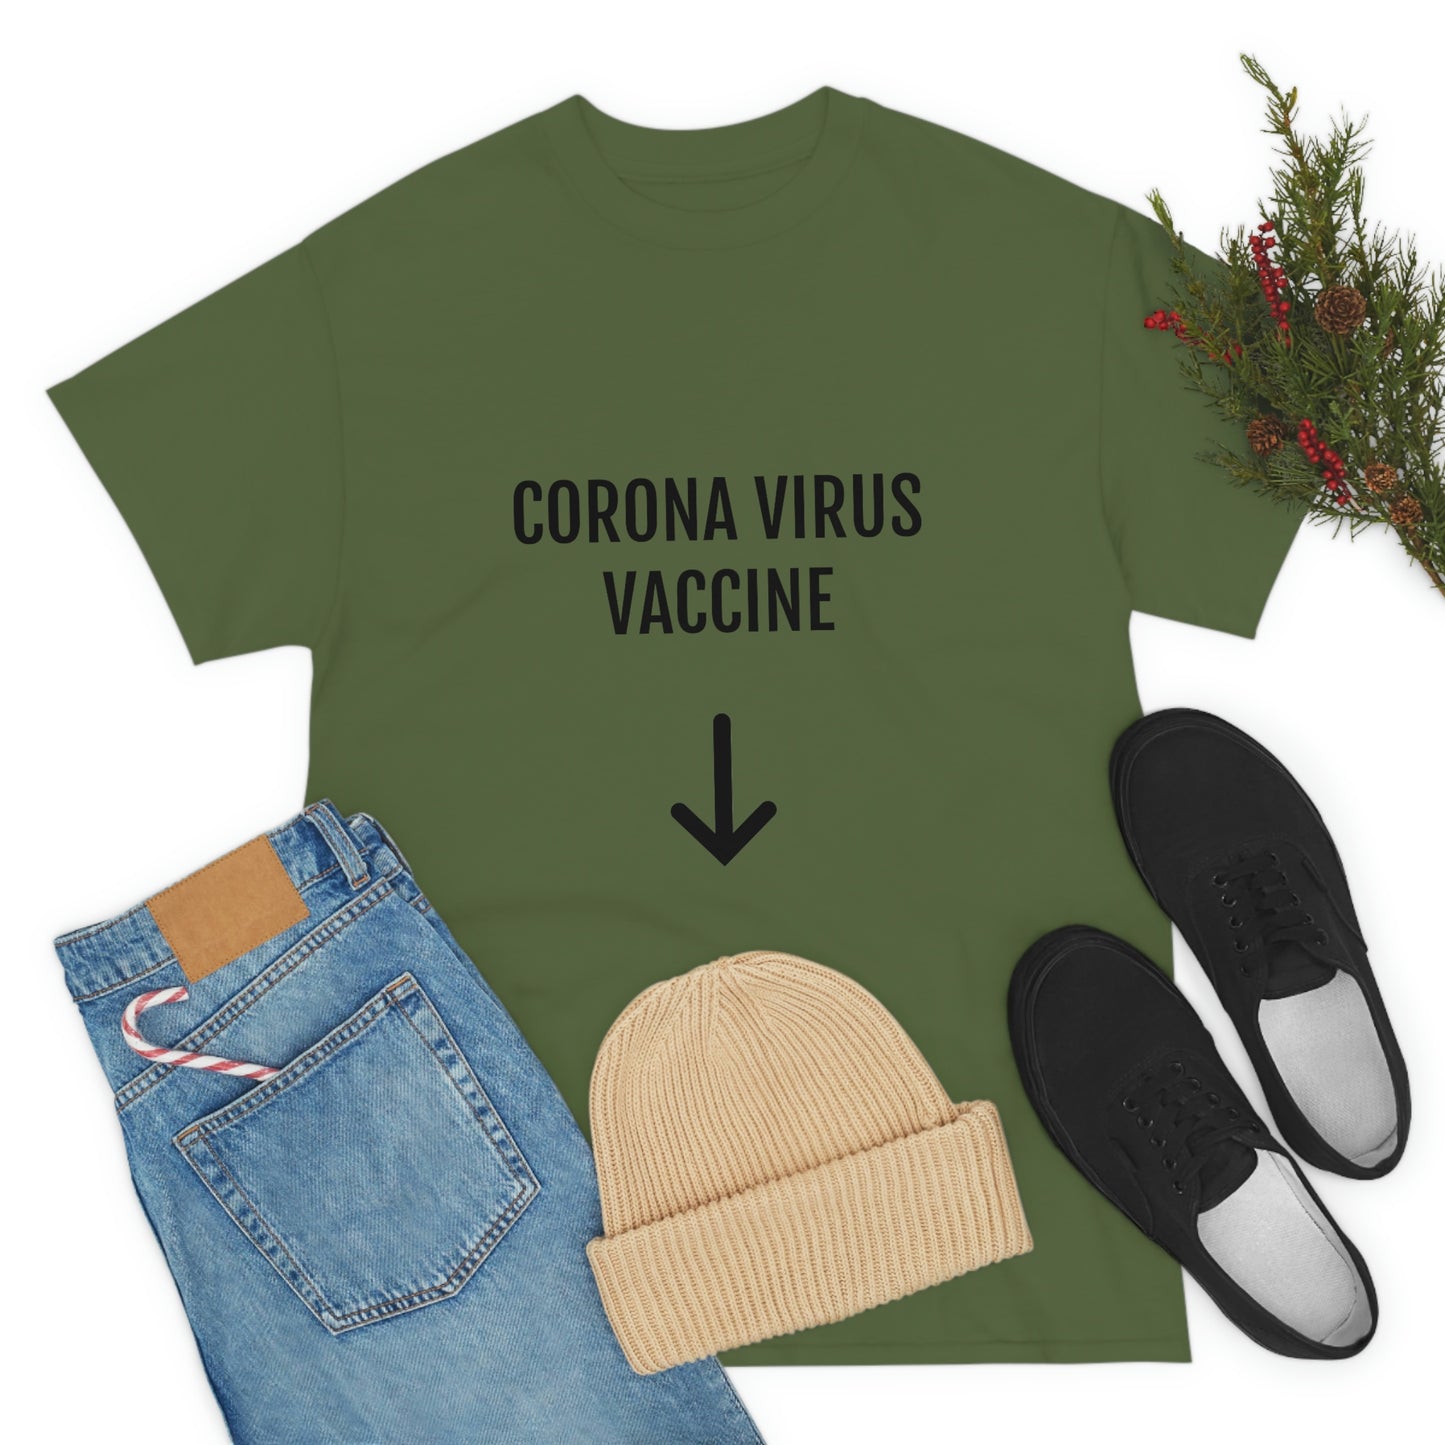 CORONA VIRUS VACCINE T-SHIRT